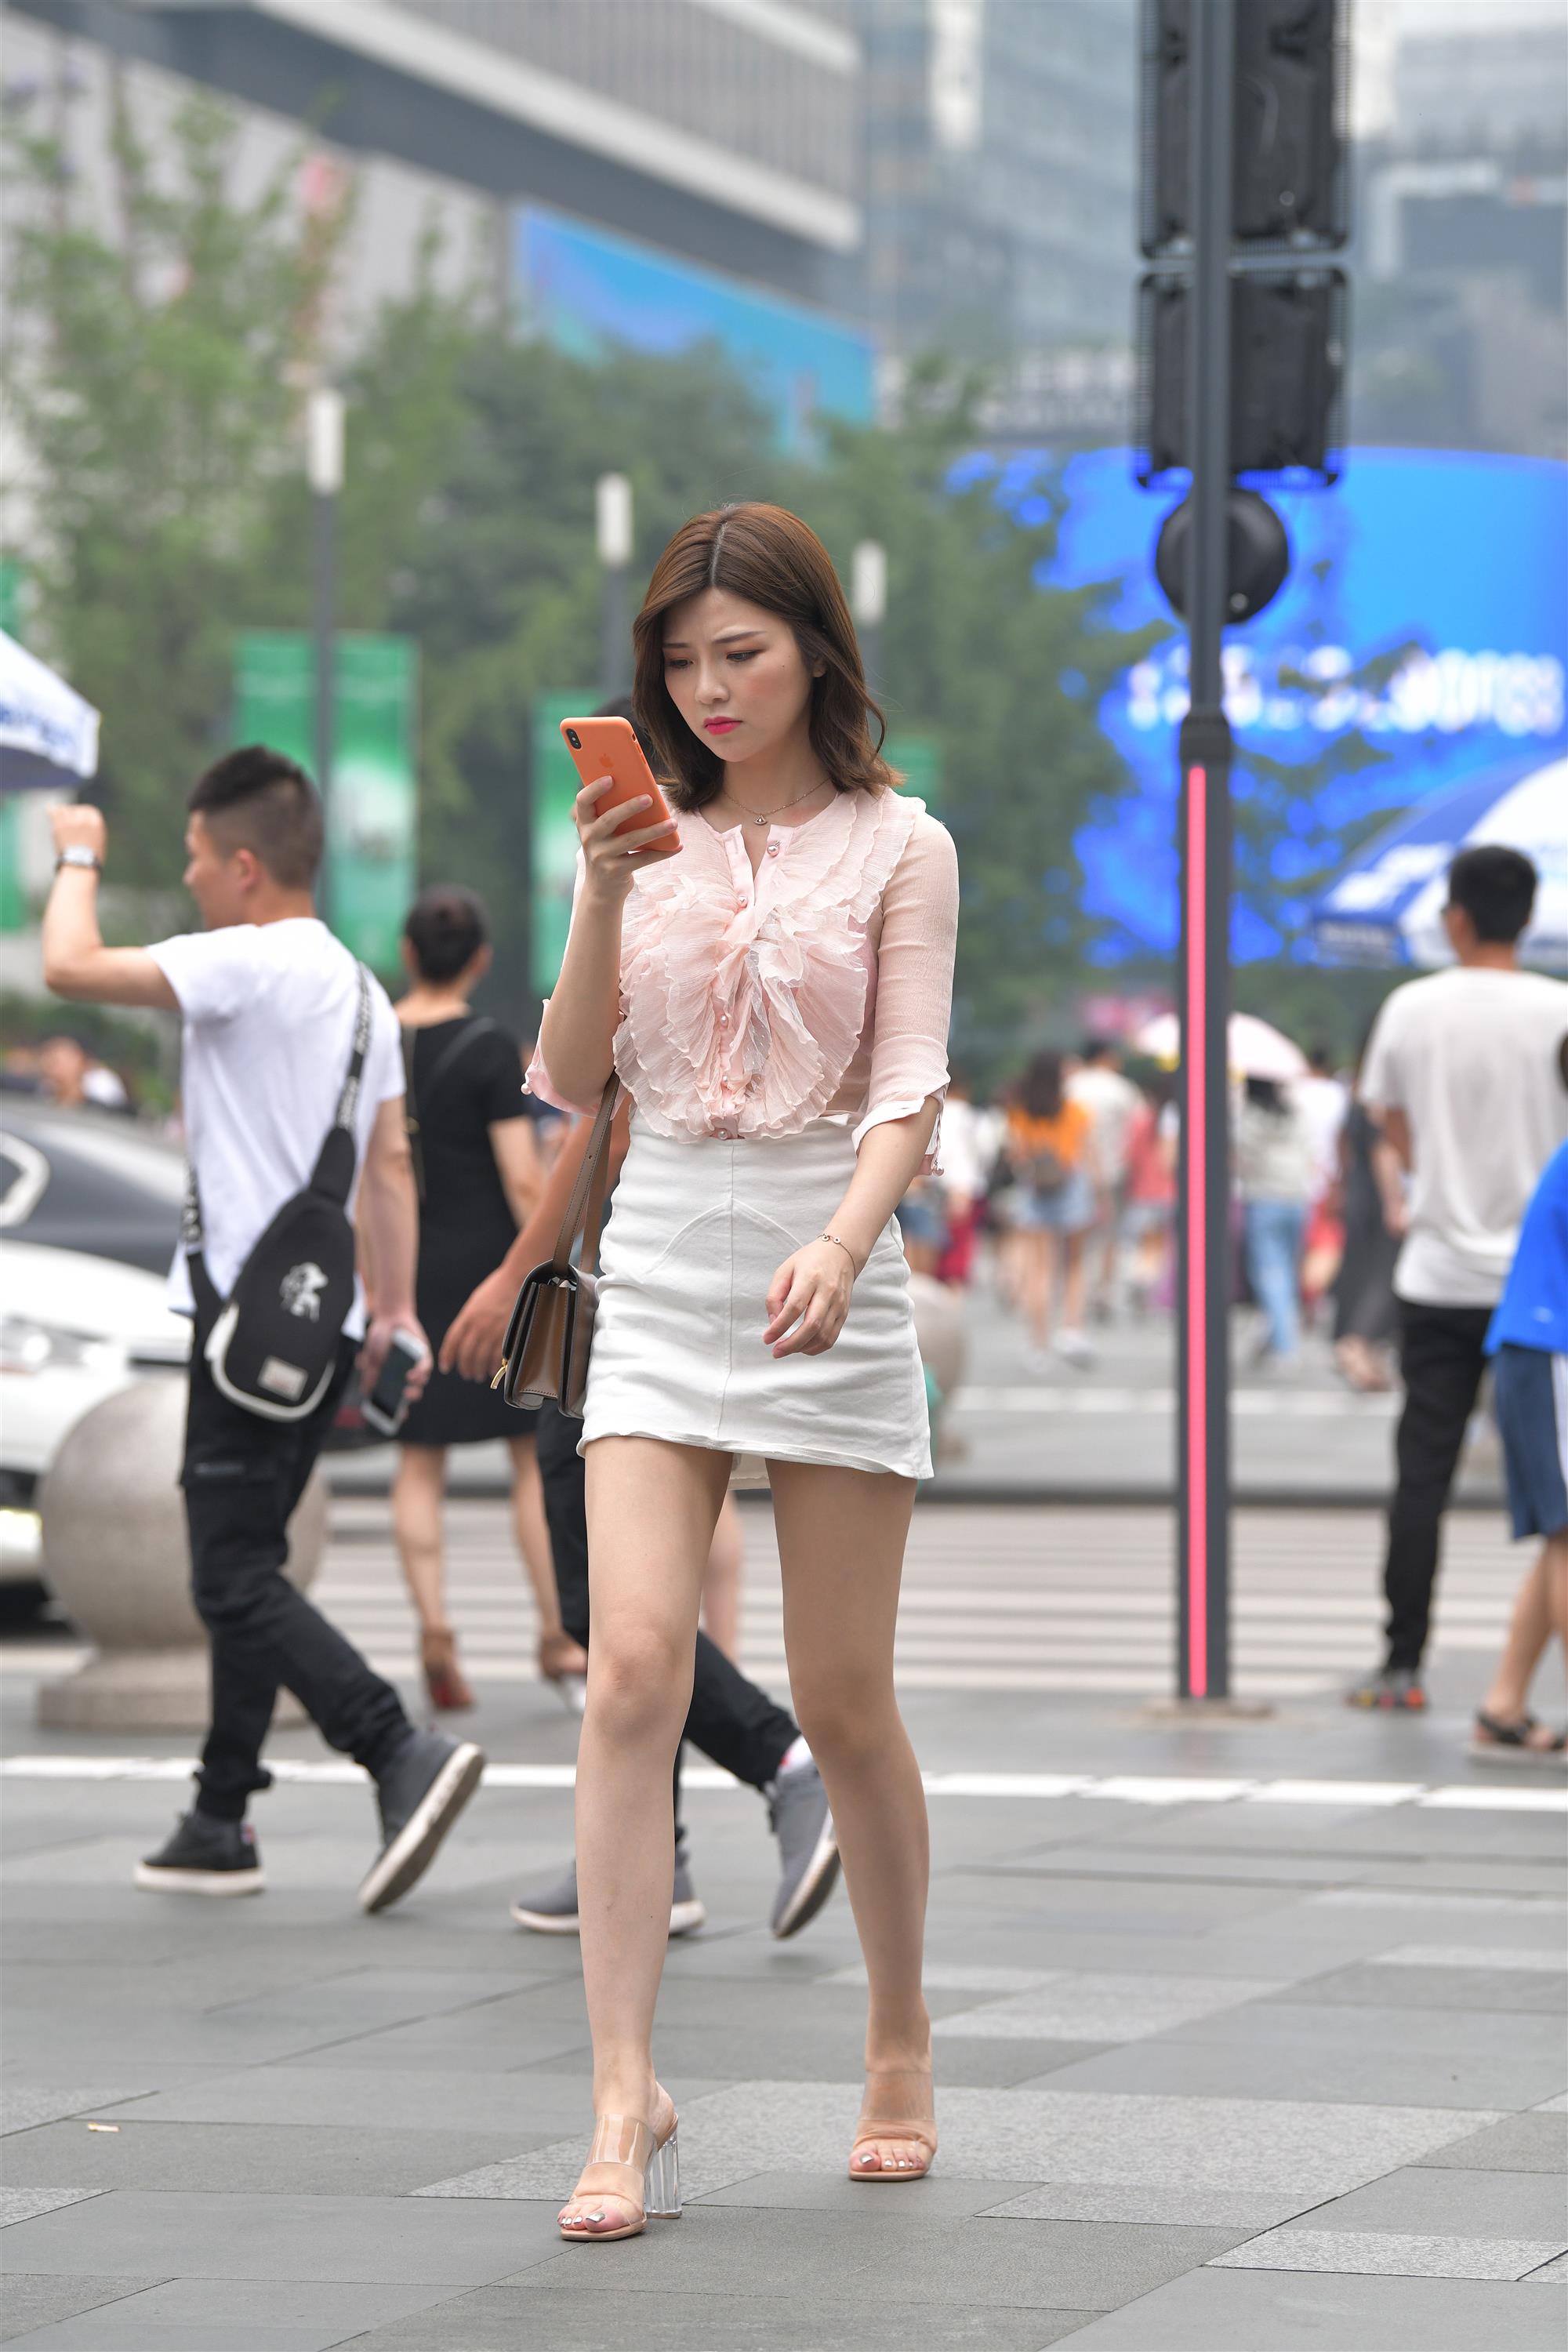 Street Short skirt - 4.jpg